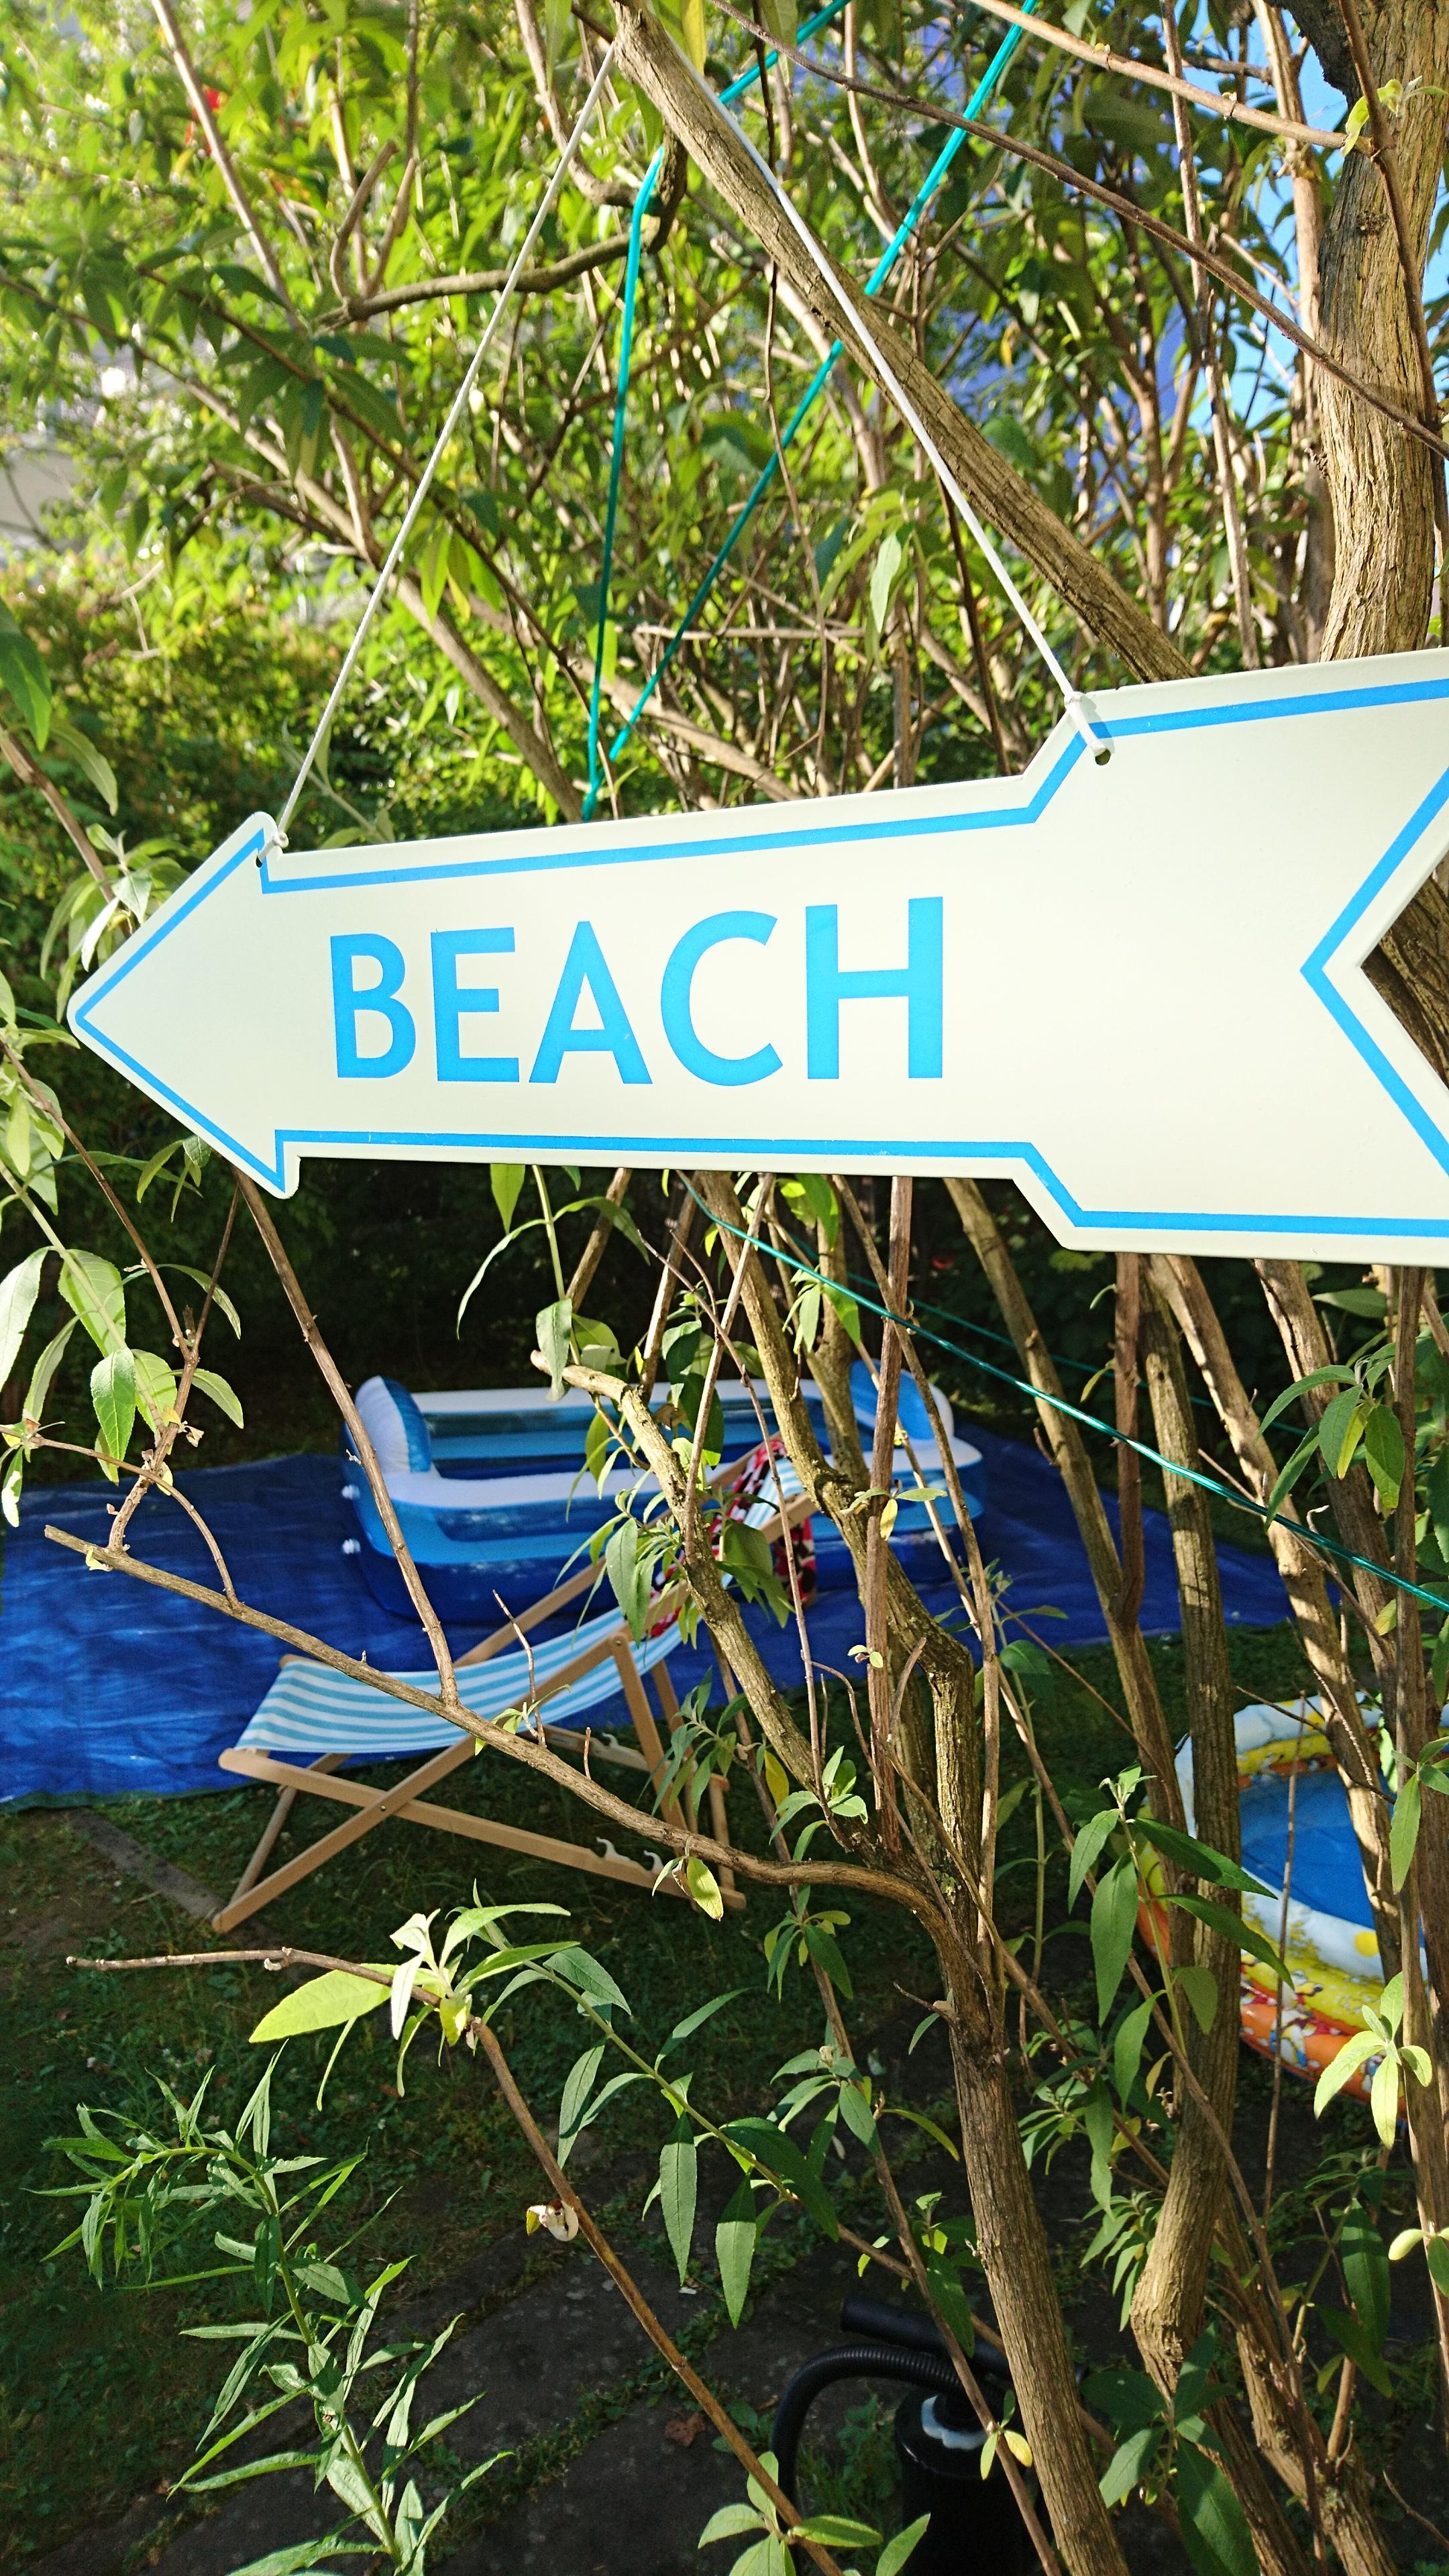 Der heutige #Sommermoment ?

Spontan den Hinterhof zur Beach Area erklärt... 